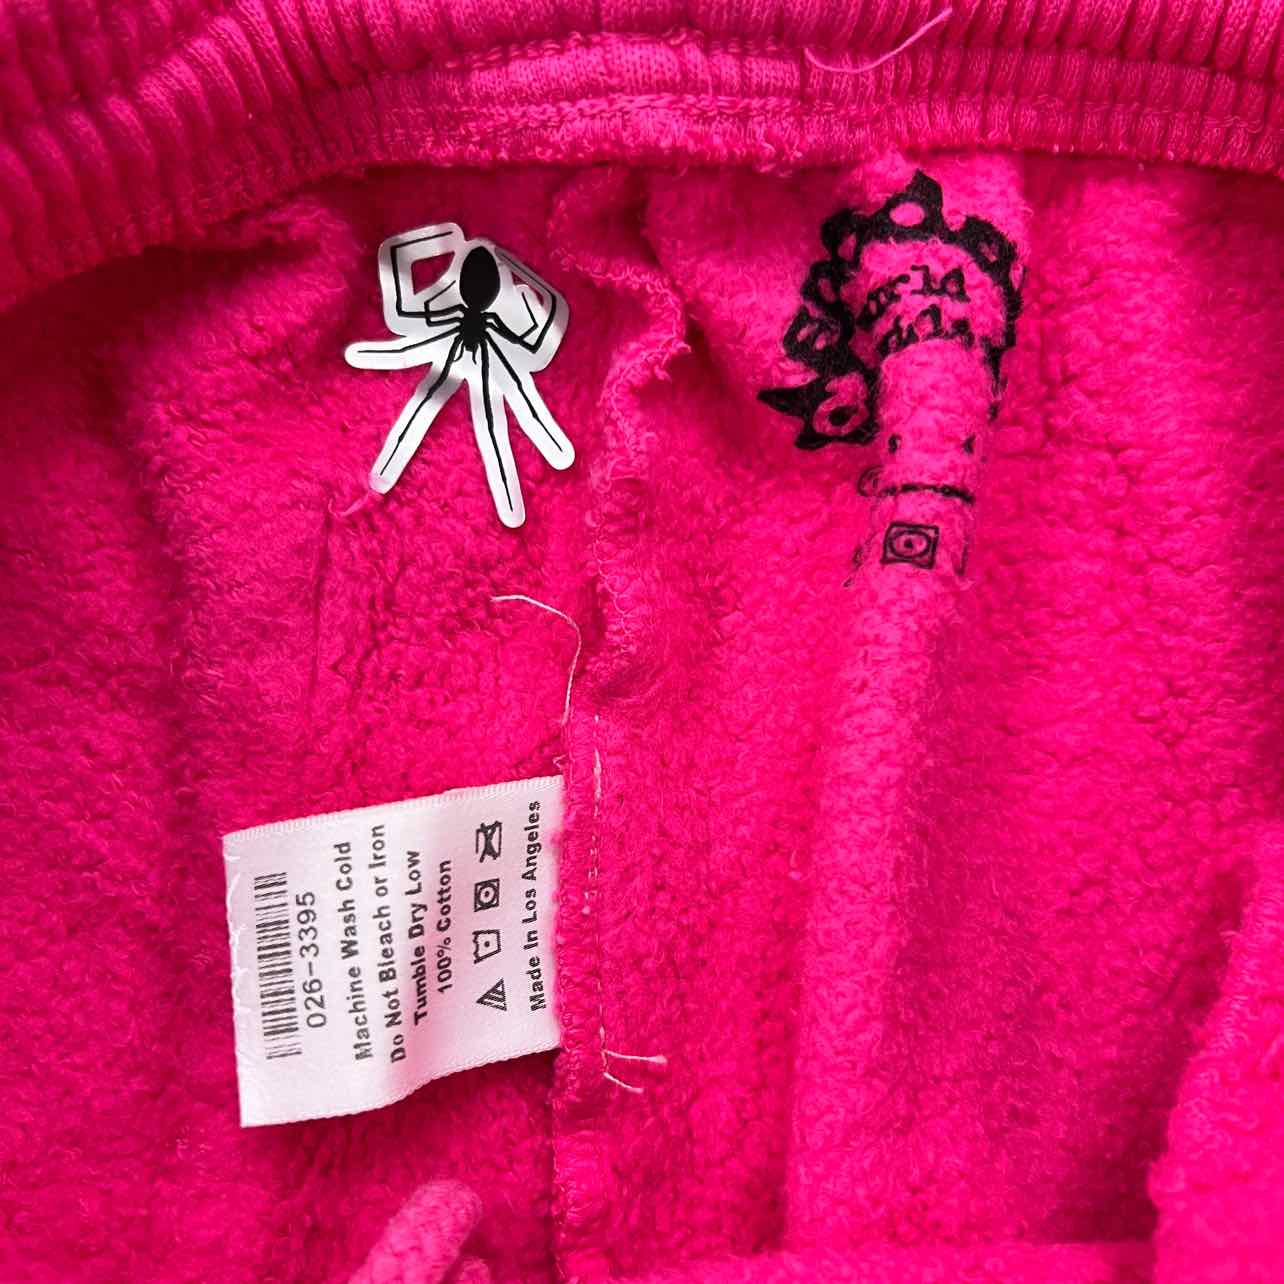 Sp5der Sweatpants "P*NK" Pink New Size M